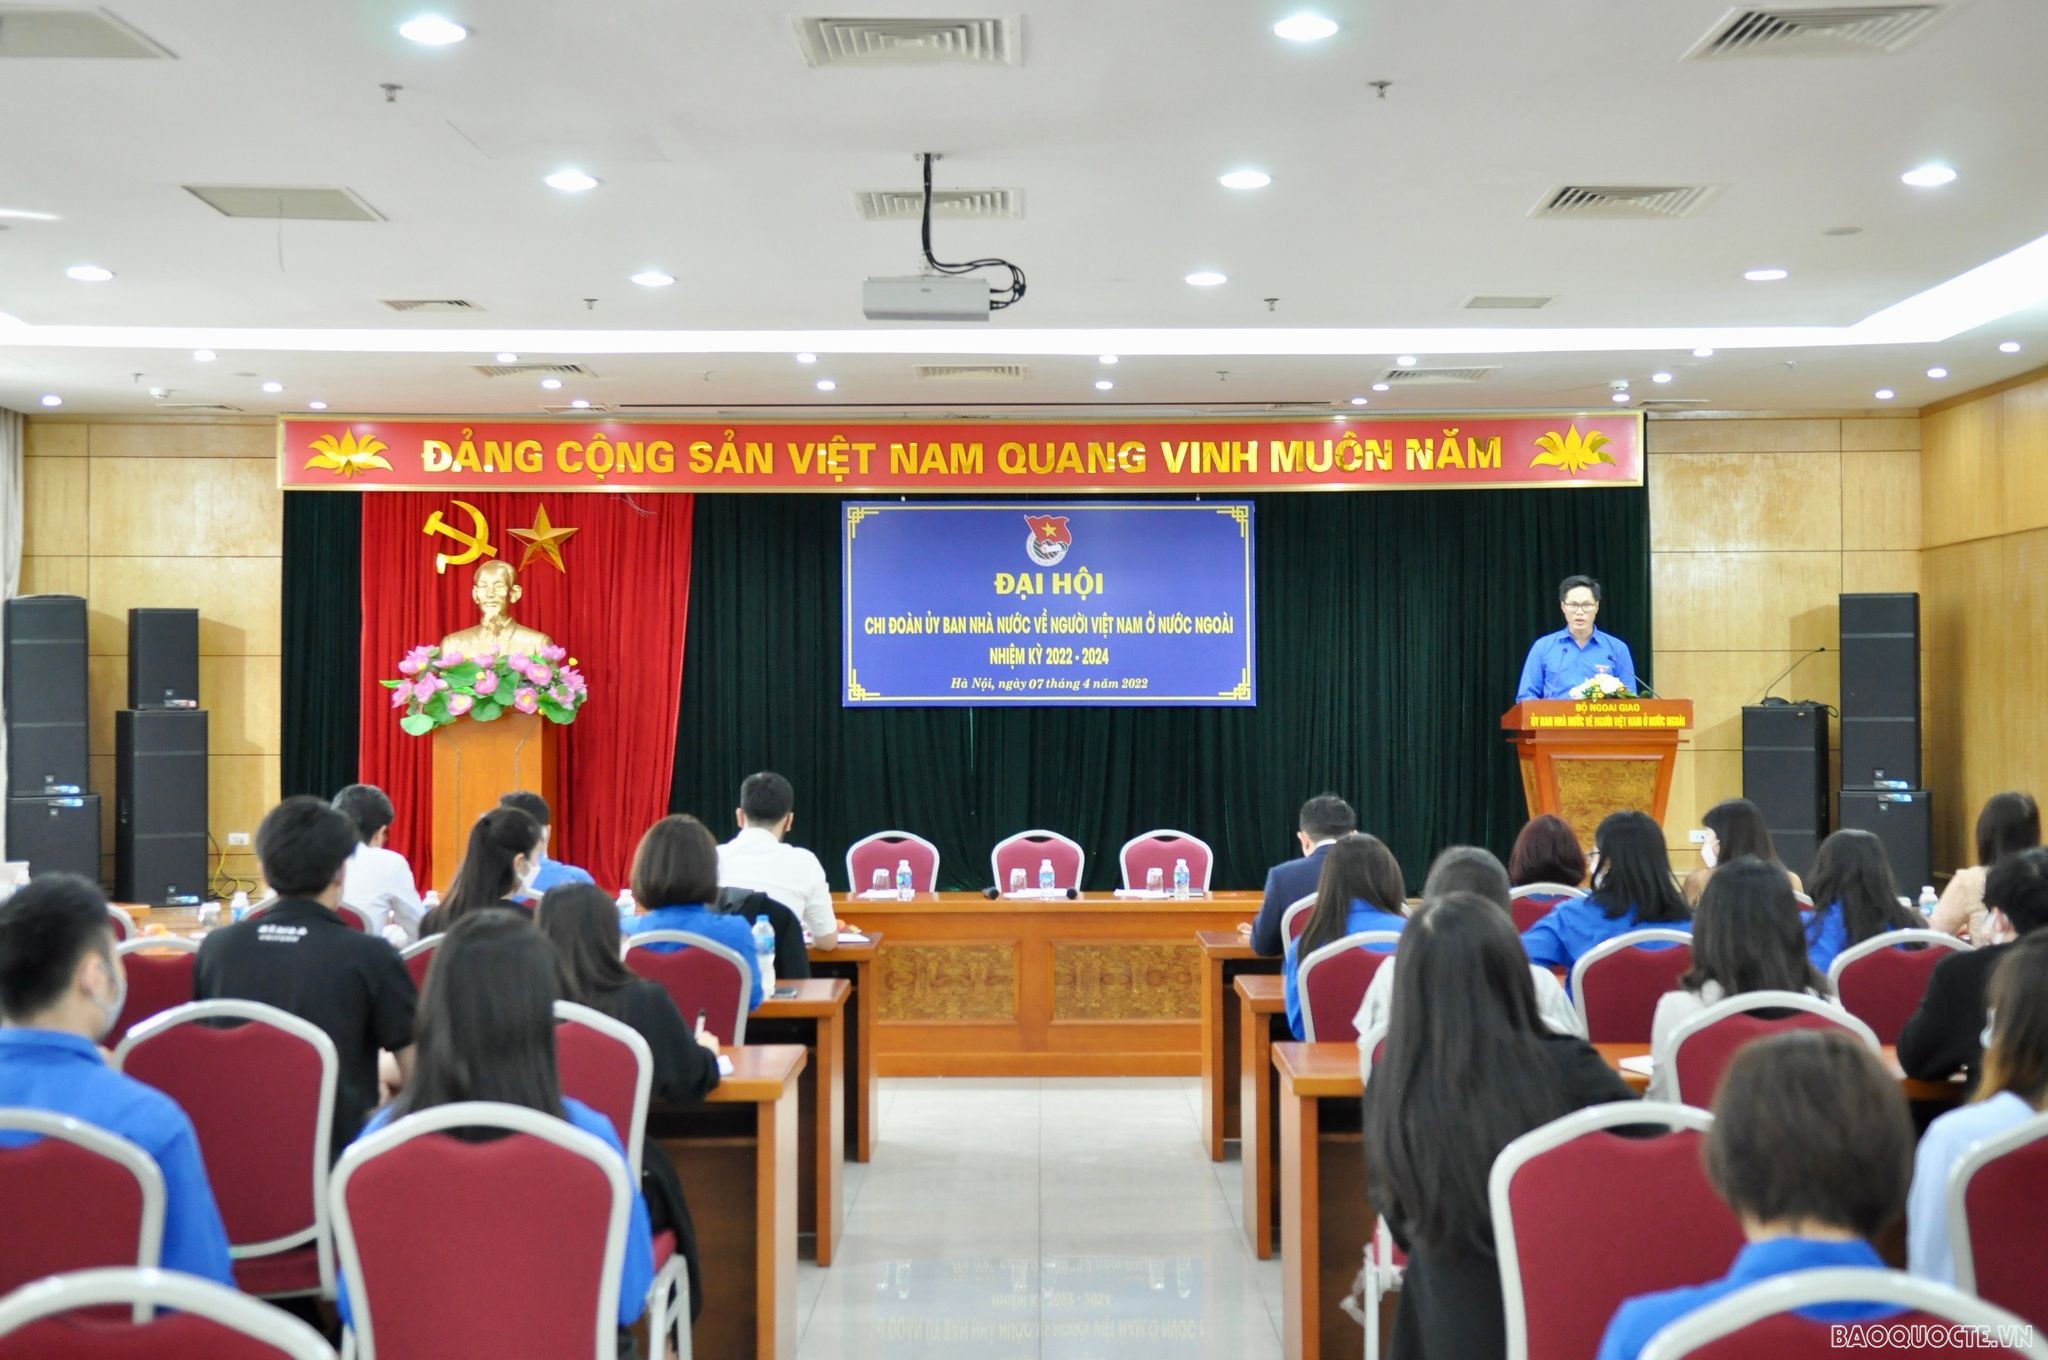 Chiều ngày 7/4, tại Hà Nội đã diễn ra Đại hội Chi đoàn Ủy ban Nhà nước về người Việt Nam ở nước ngoài, nhiệm kỳ 2022-2024.